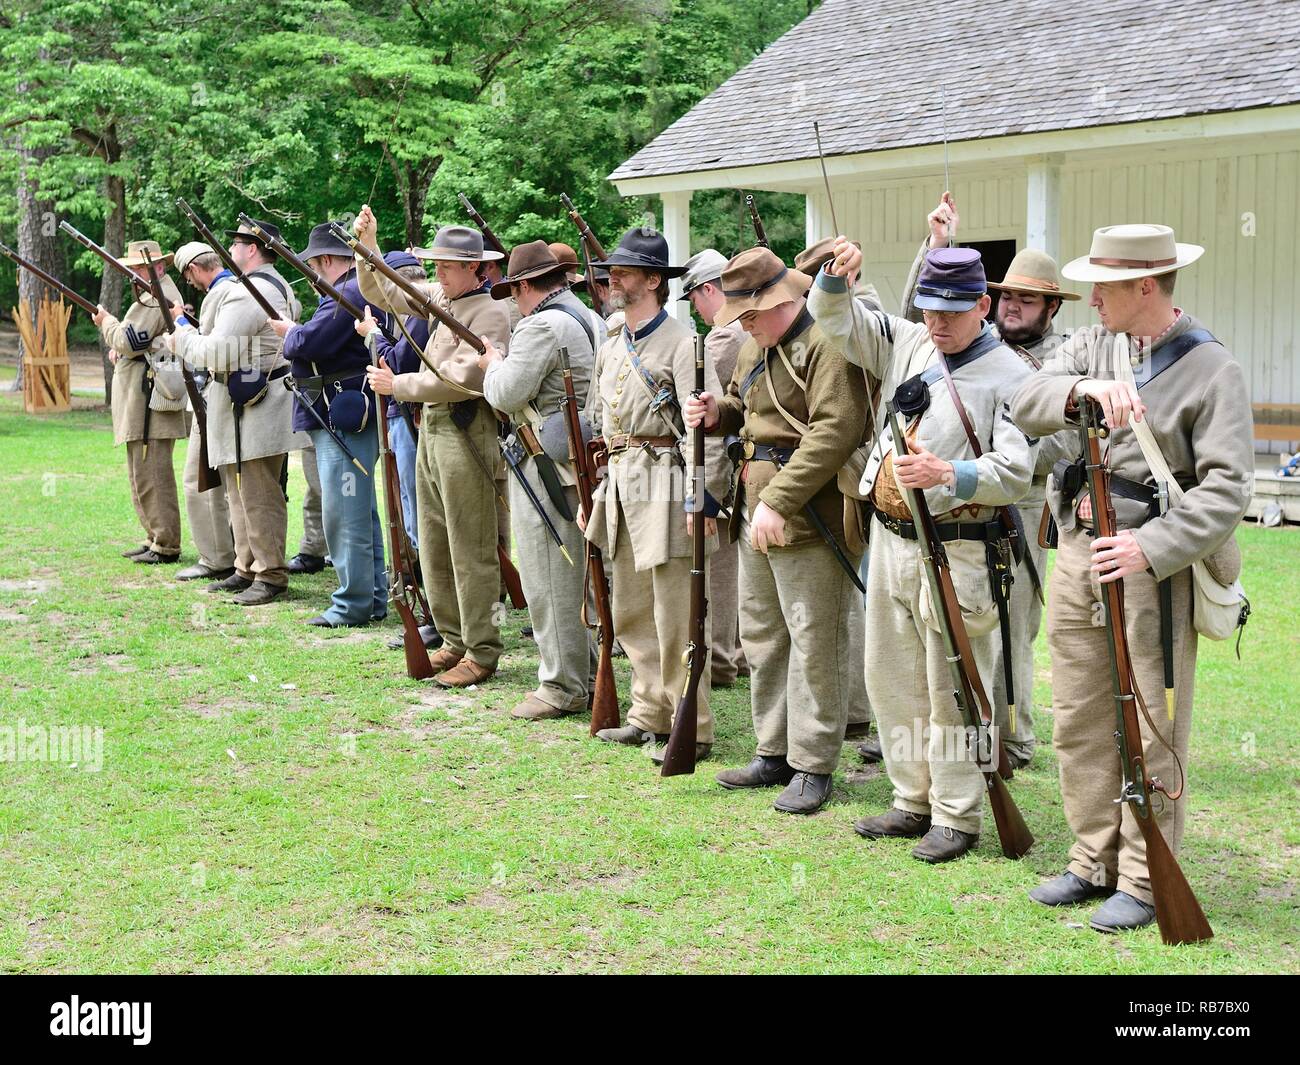 La guerra civile americana la rievocazione di soldati confederati e Unione  uniformi stand in formazione a battaglia ricreazione in Marbury Alabama USA  Foto stock - Alamy